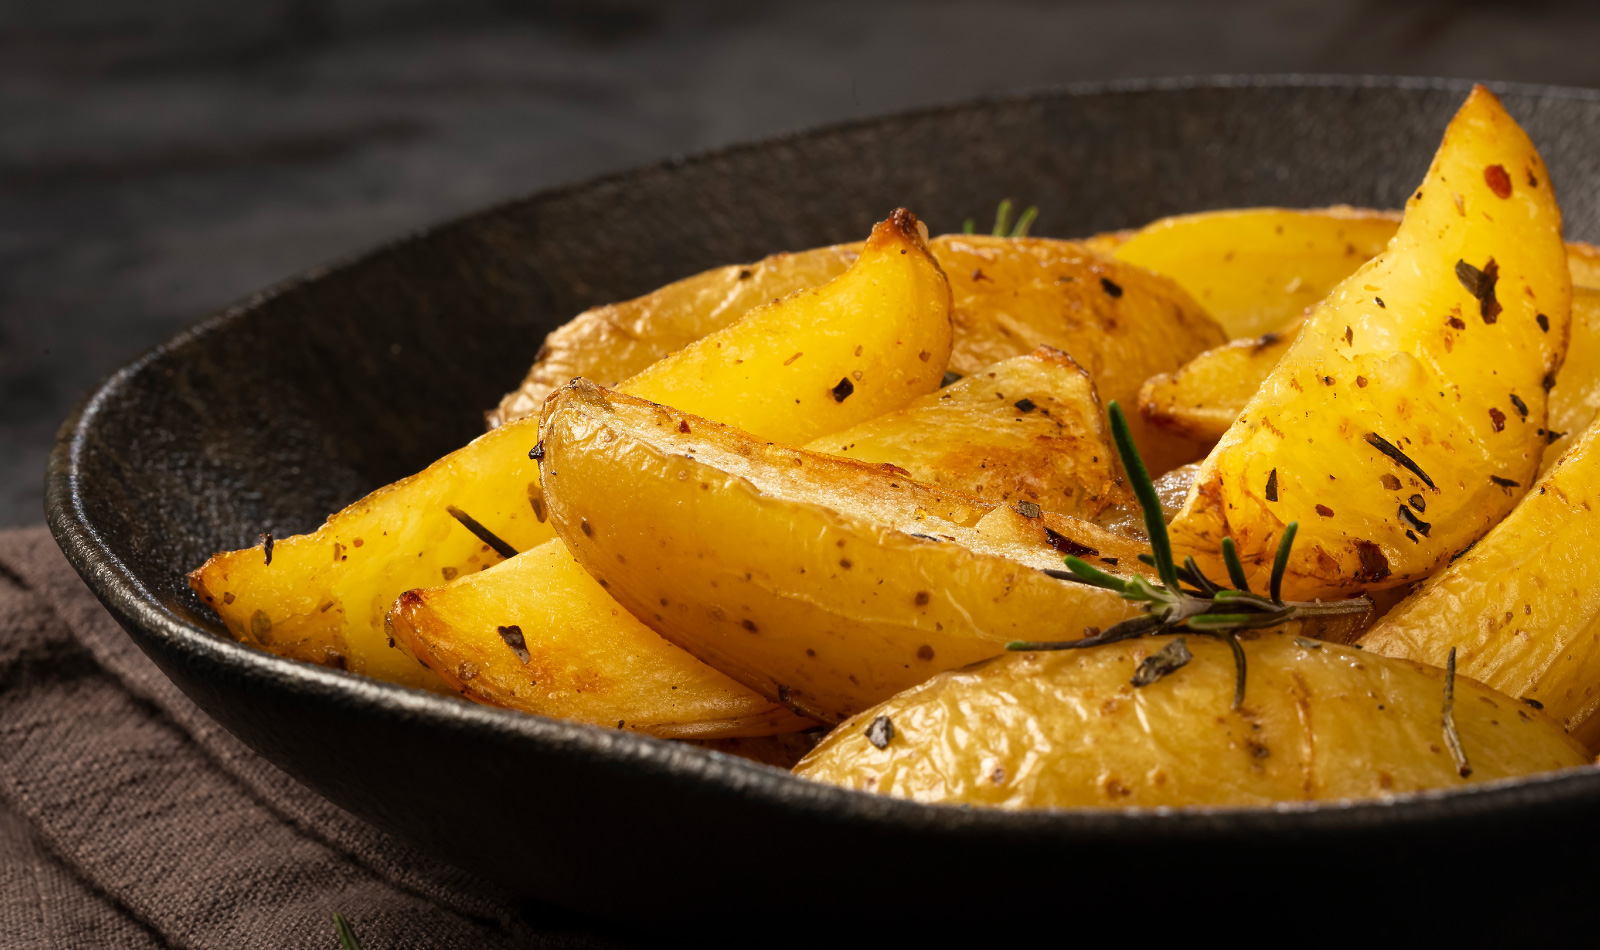 patate-al-forno